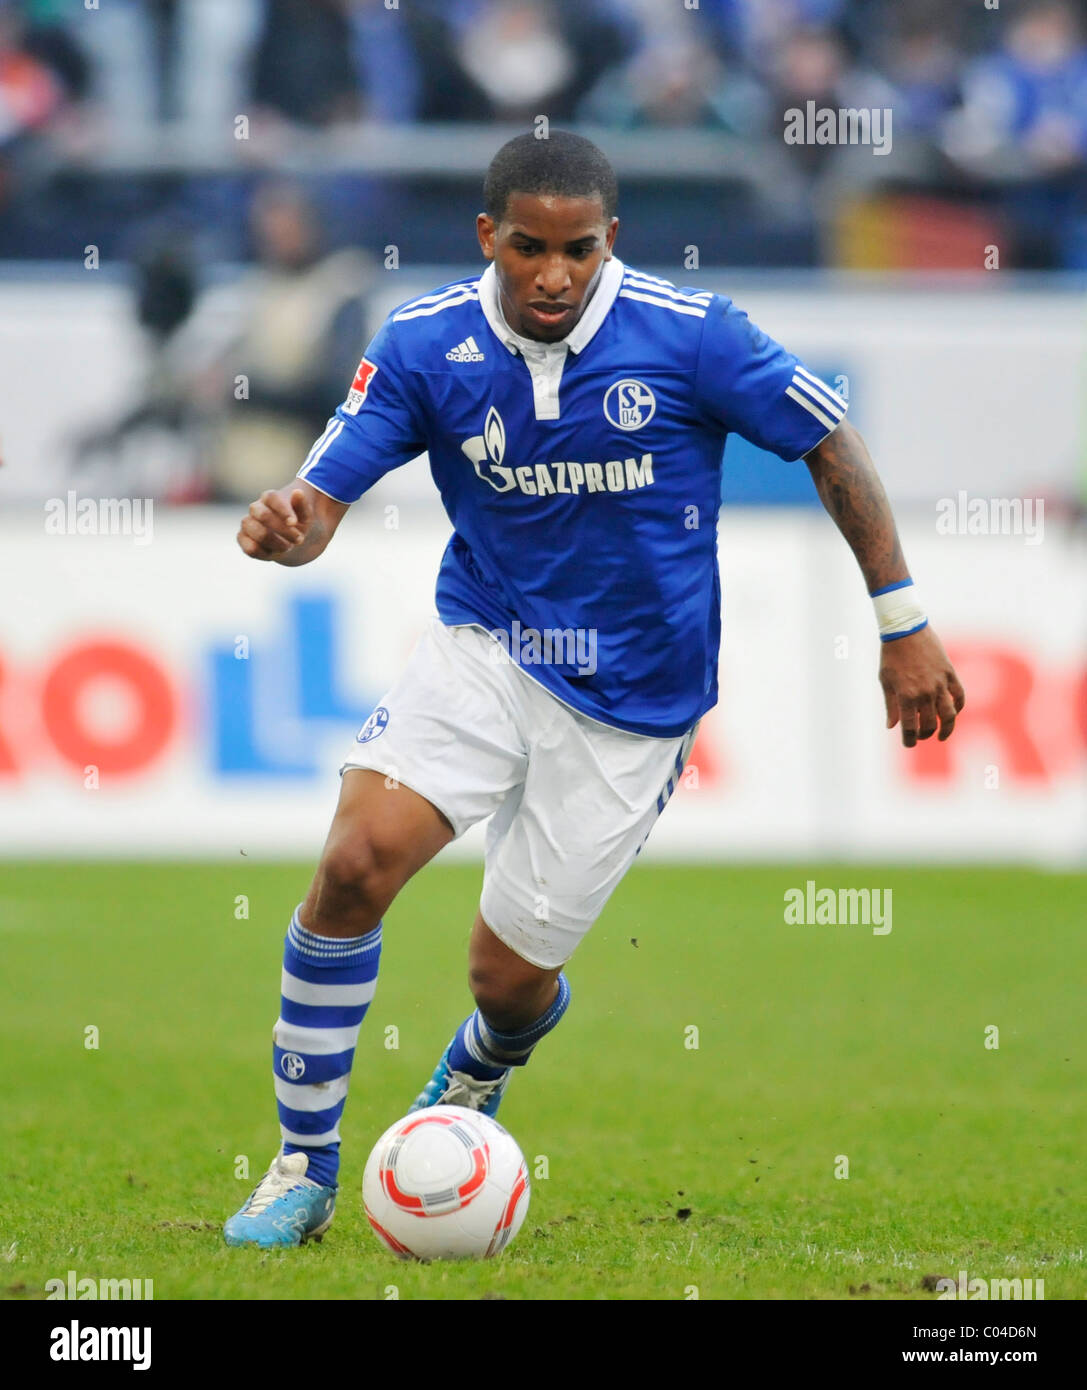 Jefferson Farfan, playing for german Bundesliga Club Schalke 04 Stock Photo  - Alamy